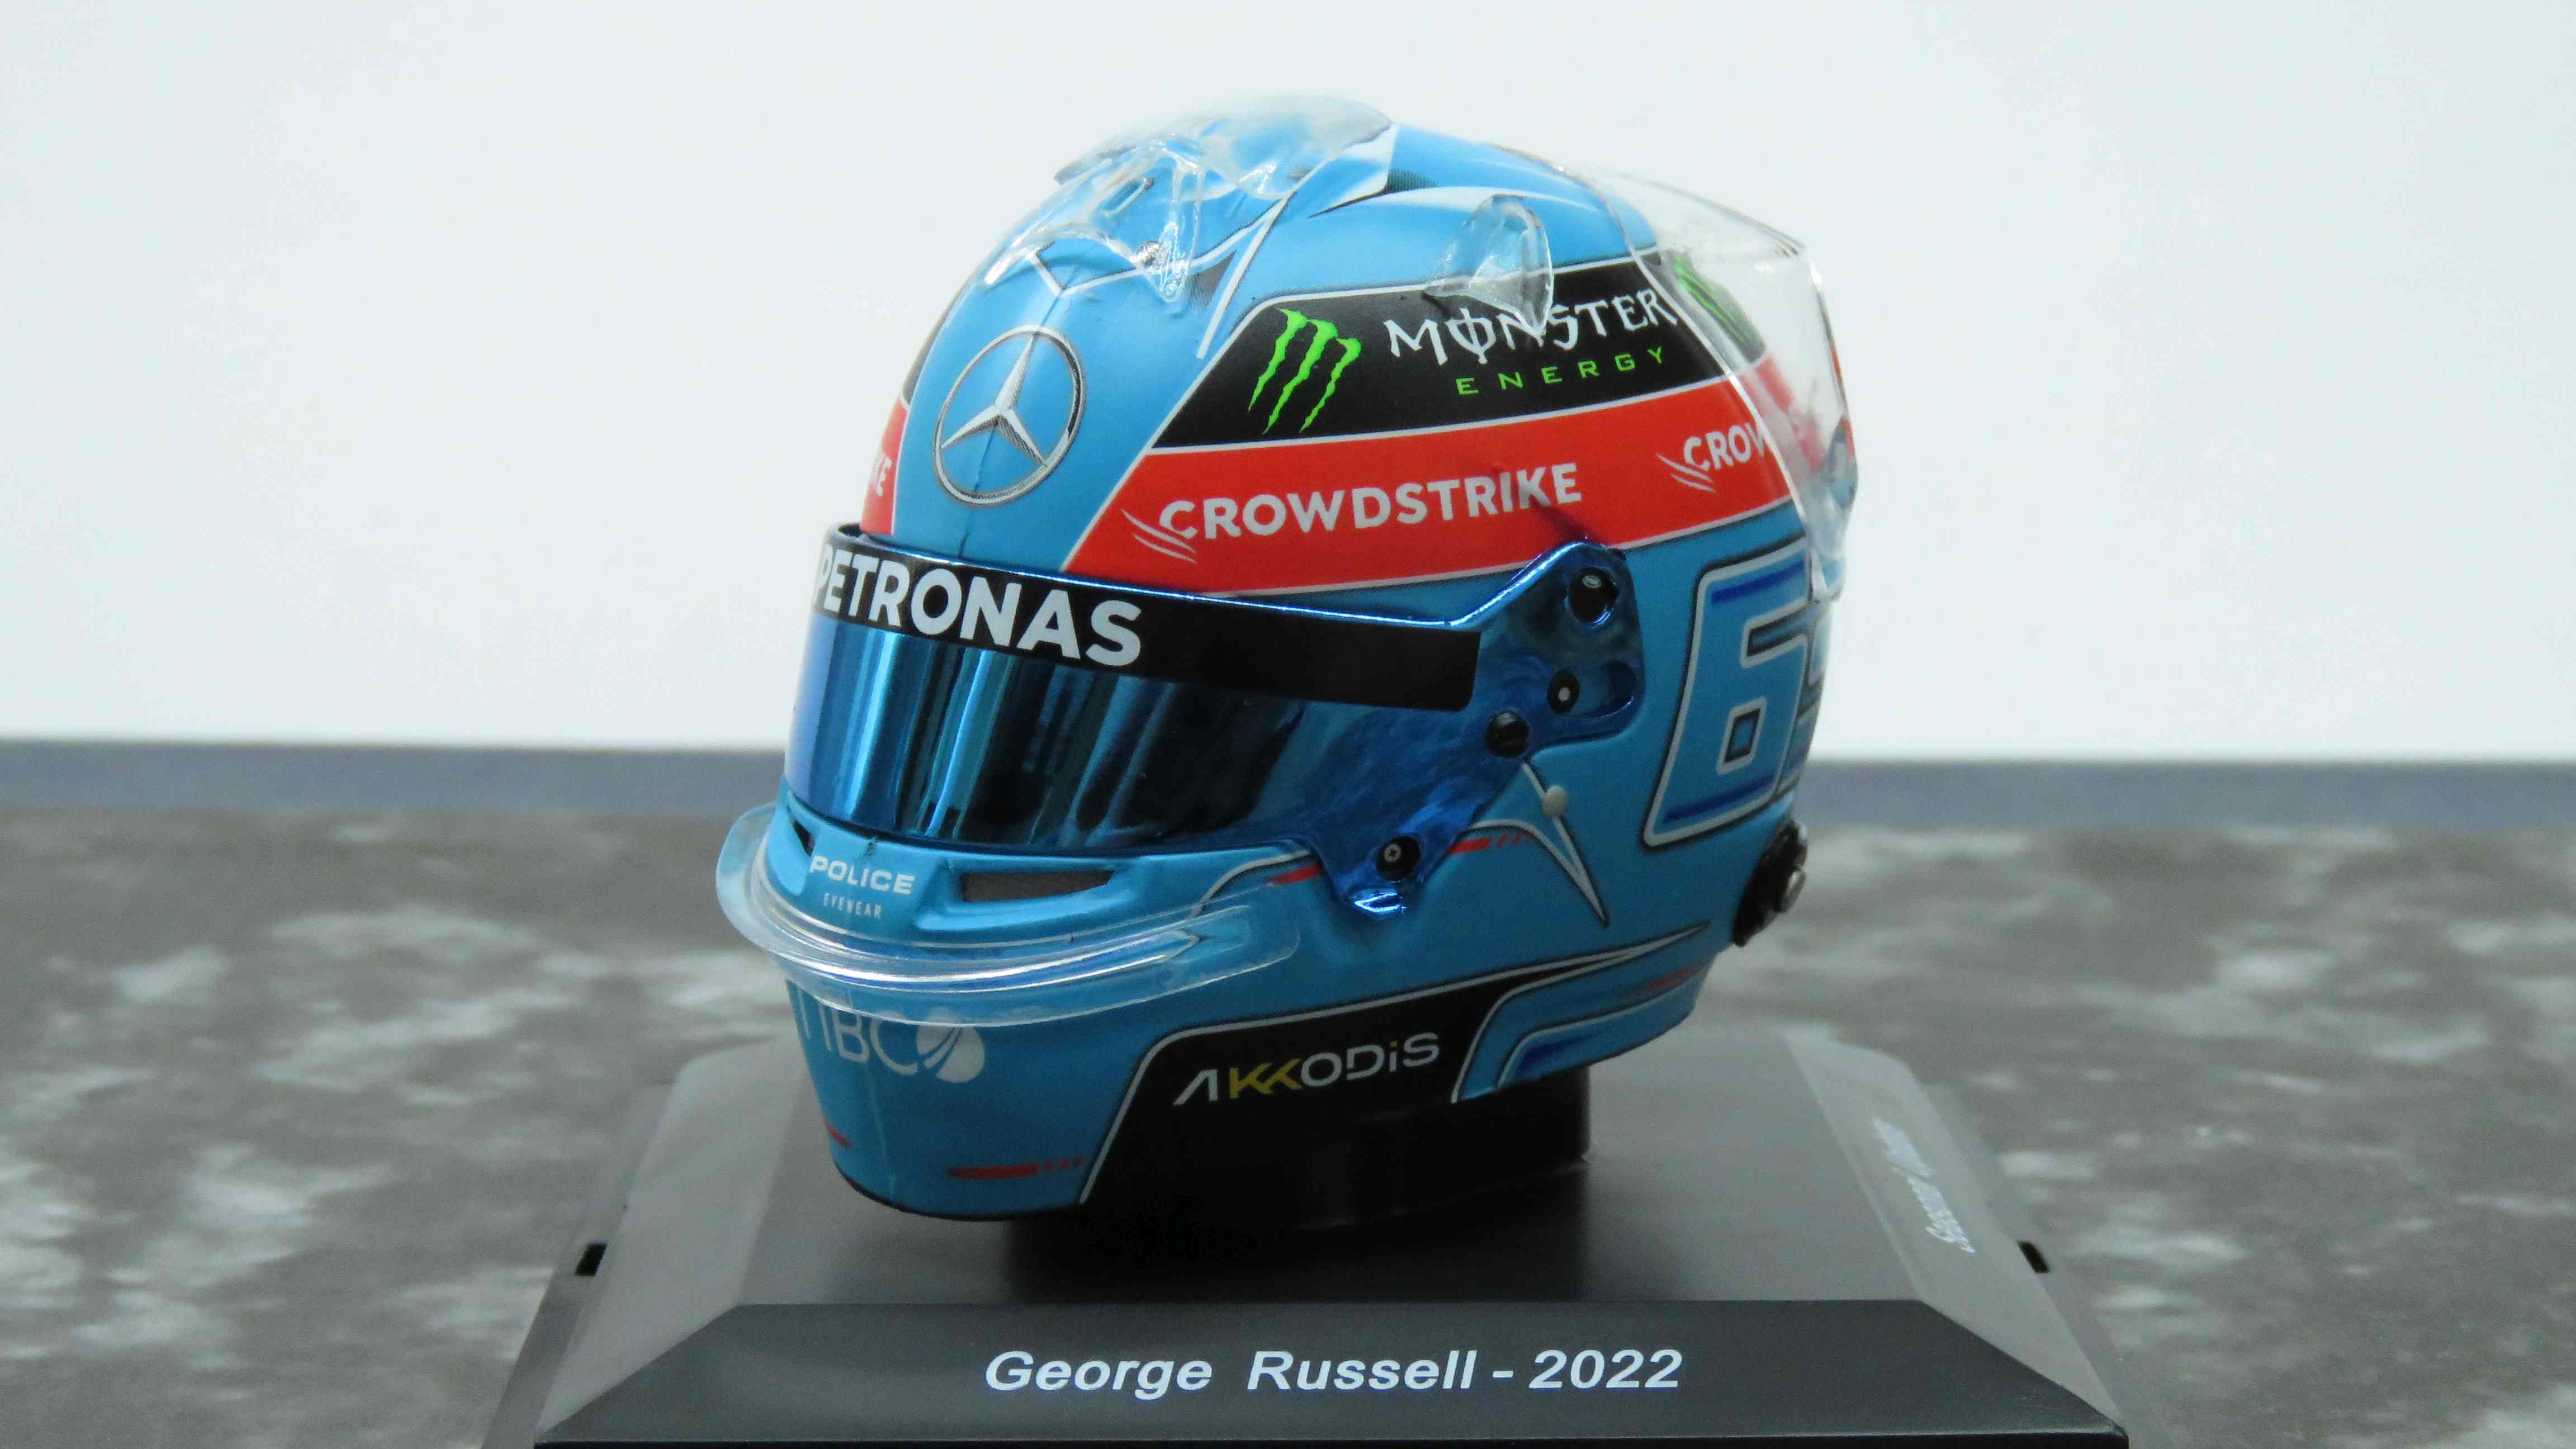 Mercedes-AMG Petronas F1 Helmet - Brazilian GP 2022 - George Russell /Spark 5HF086 1:5/